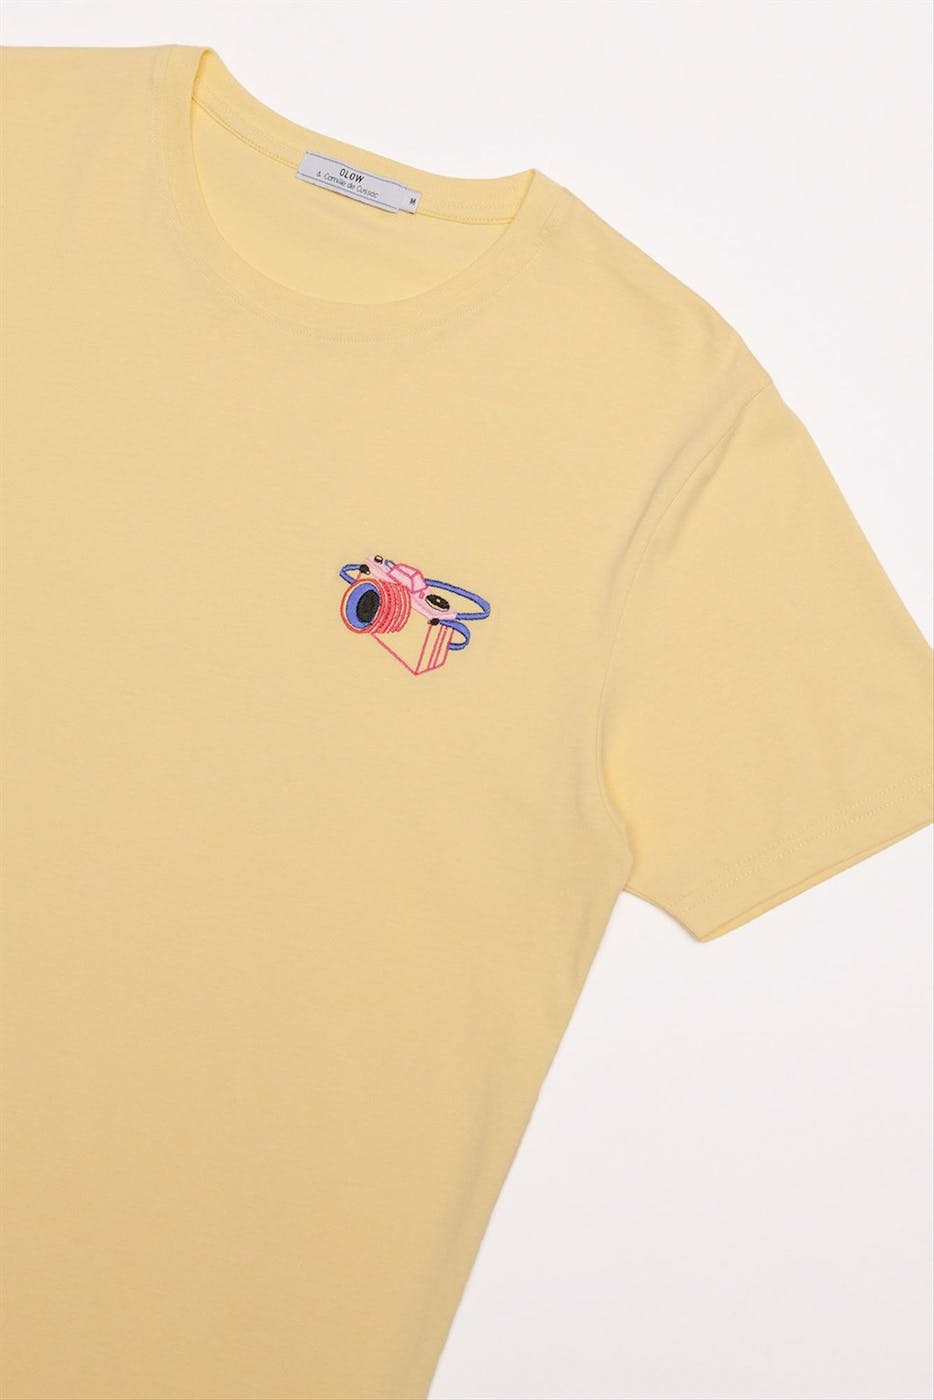 OLOW - Gele Argentique T-shirt